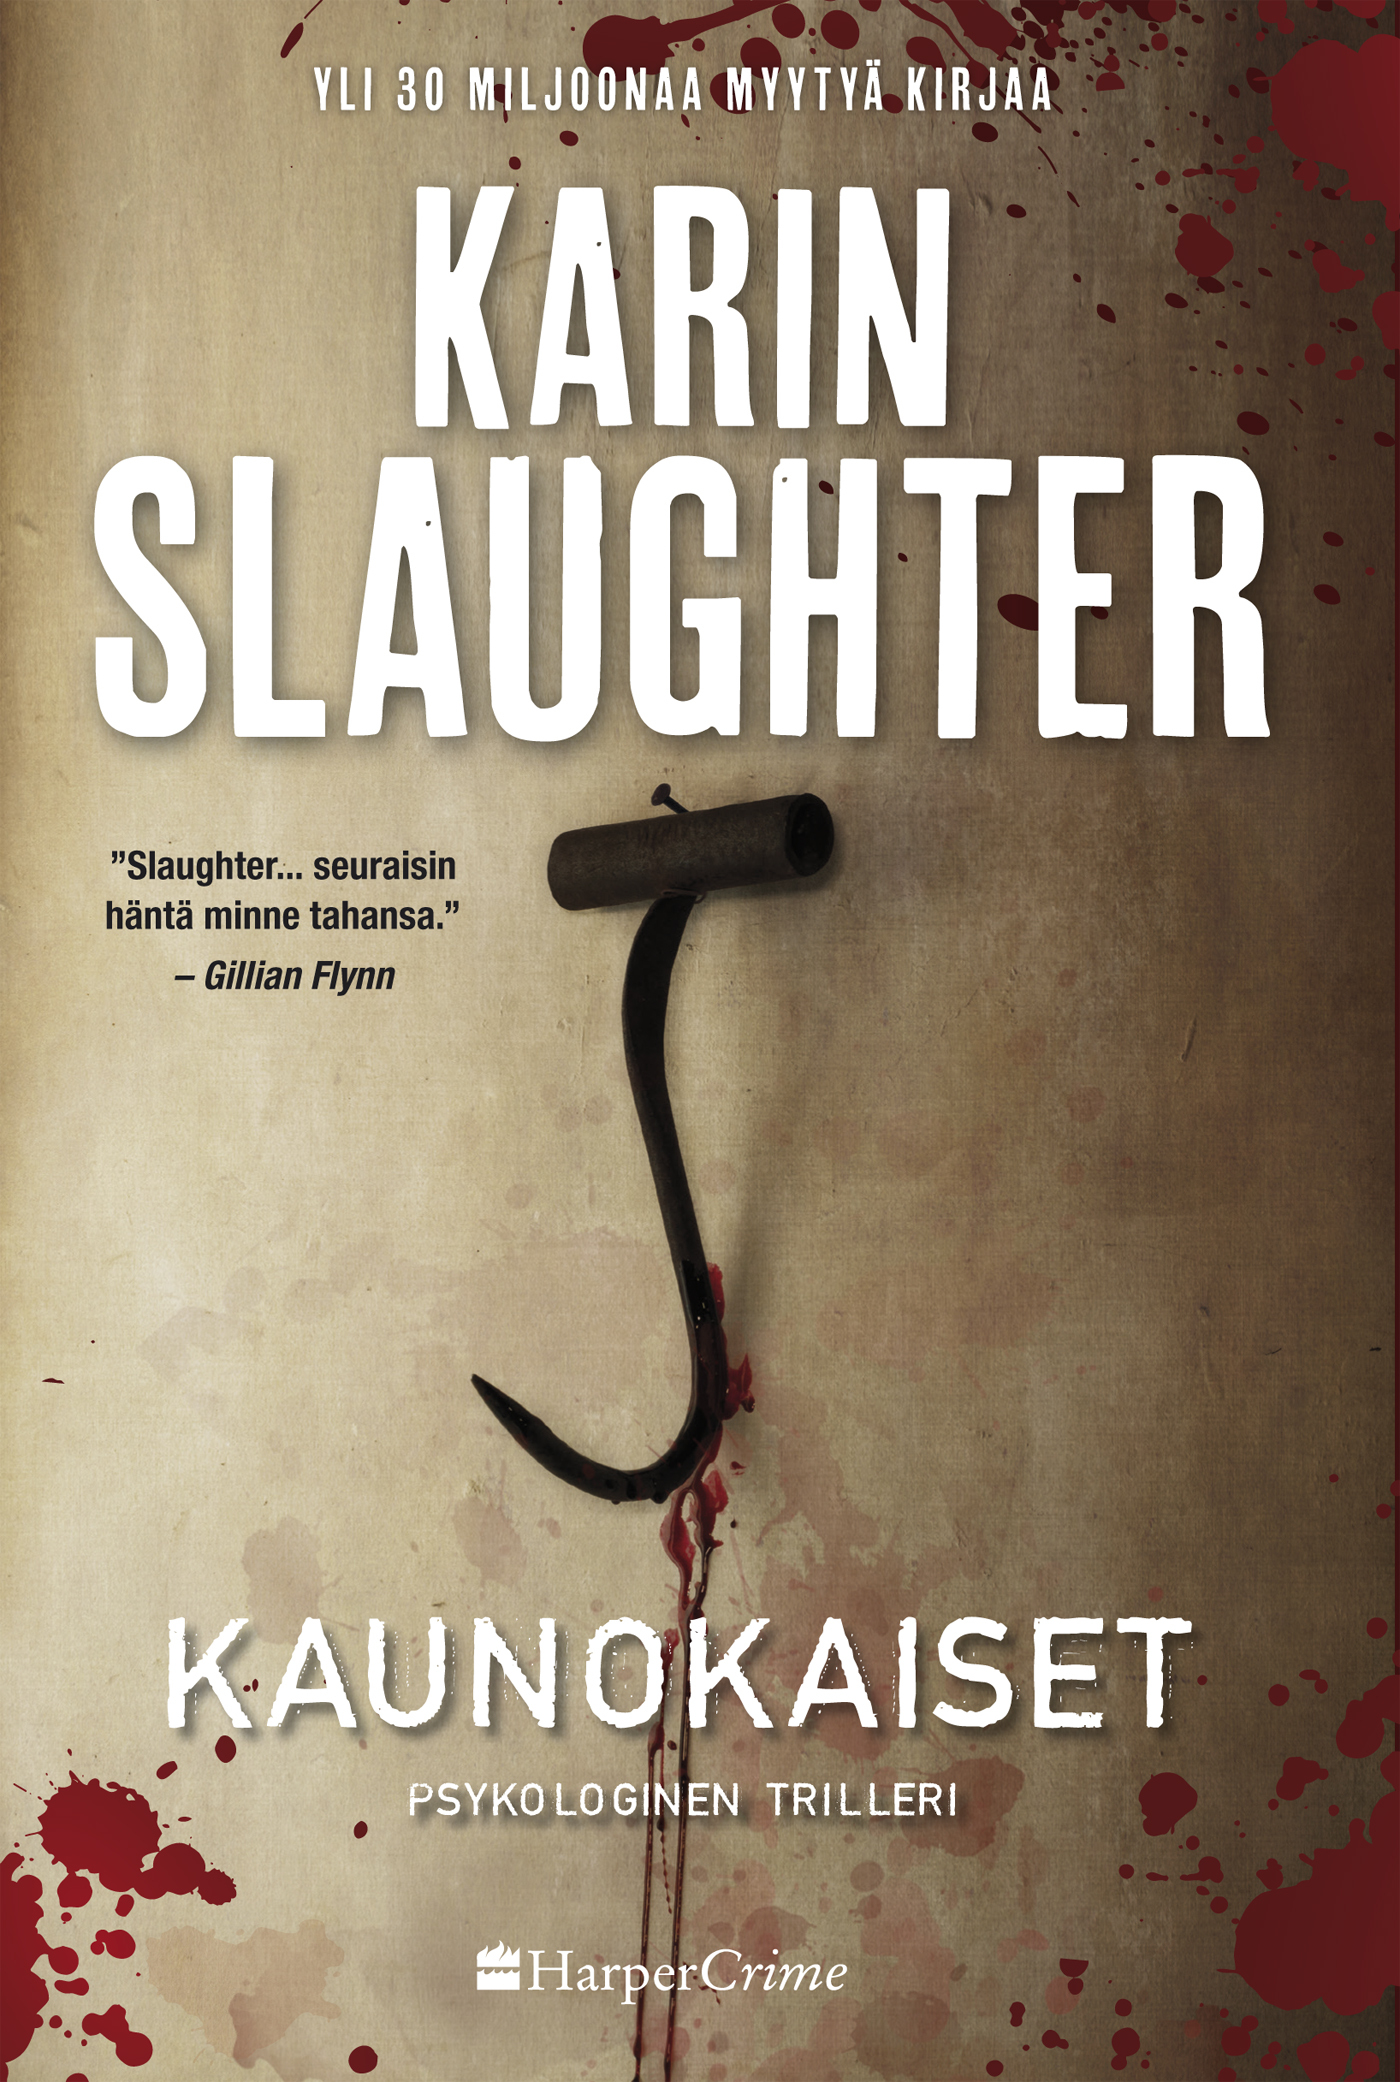 Slaughter, Karin - Kaunokaiset, ebook